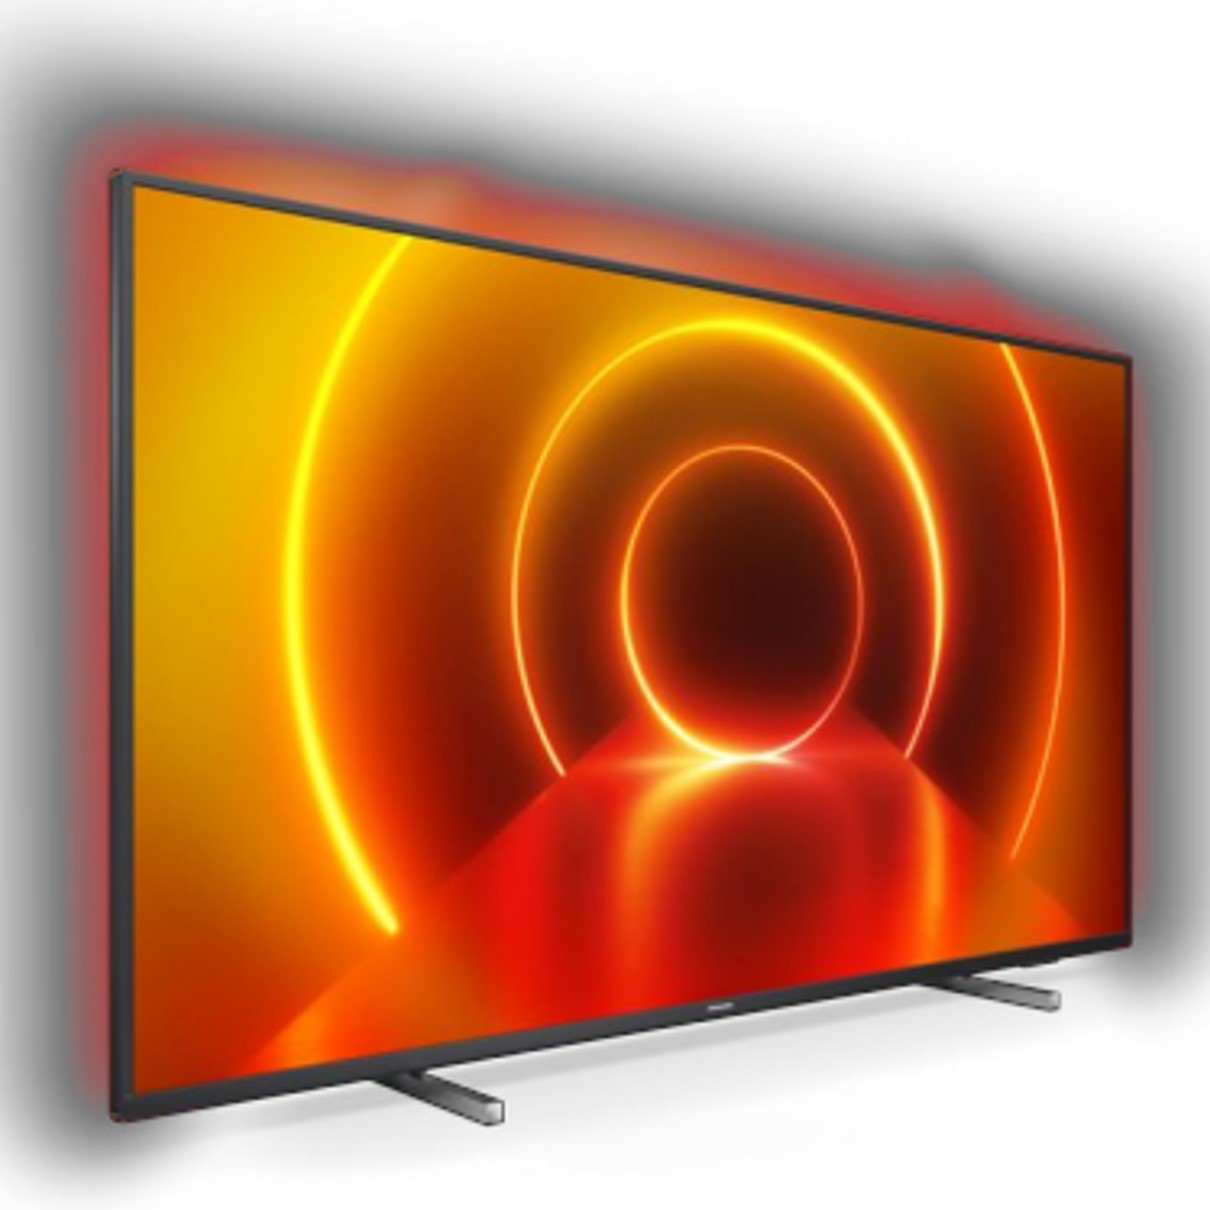 Tv philips 43pulgadas led 4k uhd -  gama 2020 -  43pus7805 -  ambilight -  hdr10+ -  smart tv -  3 hdmi -  2 usb -  dvb - t - t2 - t2 - hd - c - s - s2 -  wifi